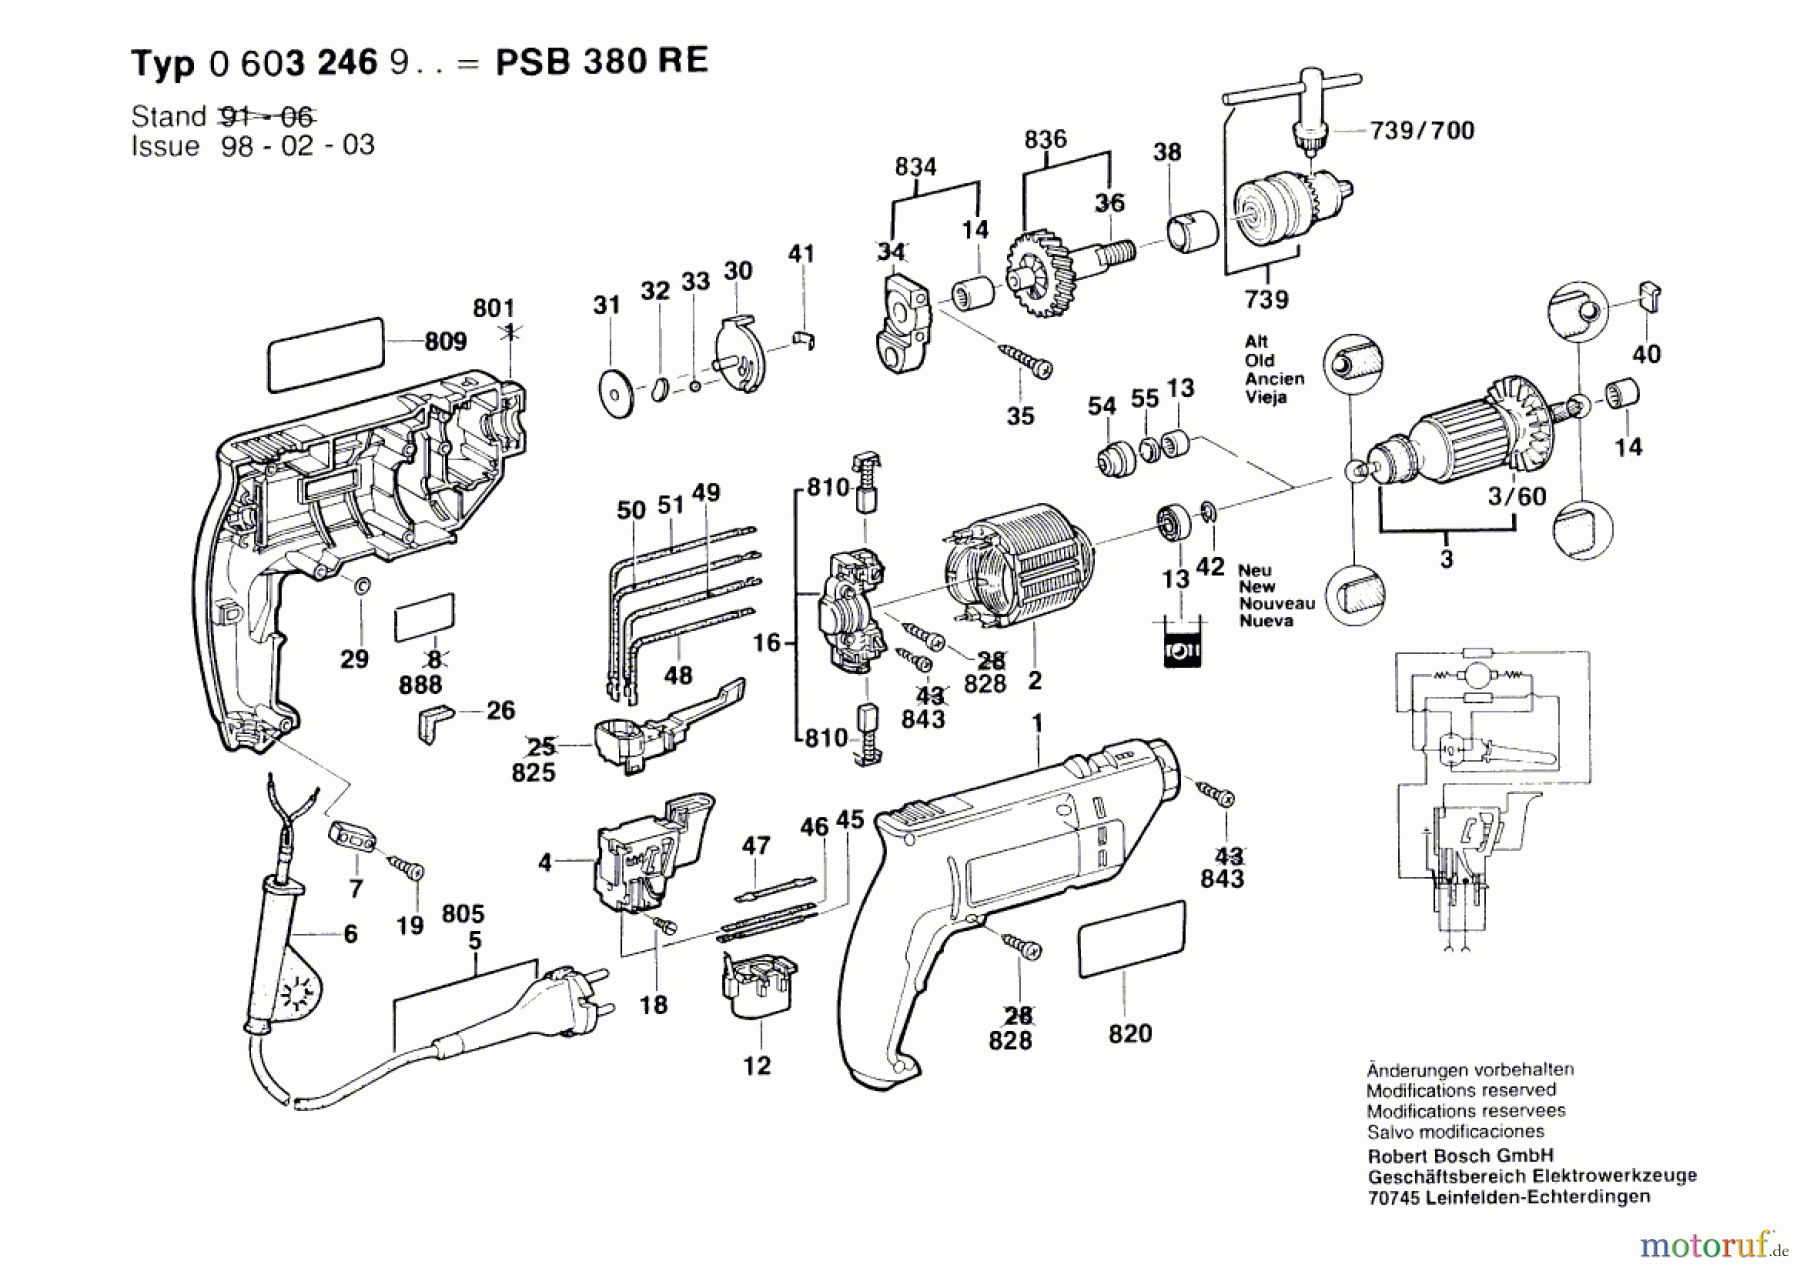  Bosch Werkzeug Schlagbohrmaschine PSB 380 RE Seite 1